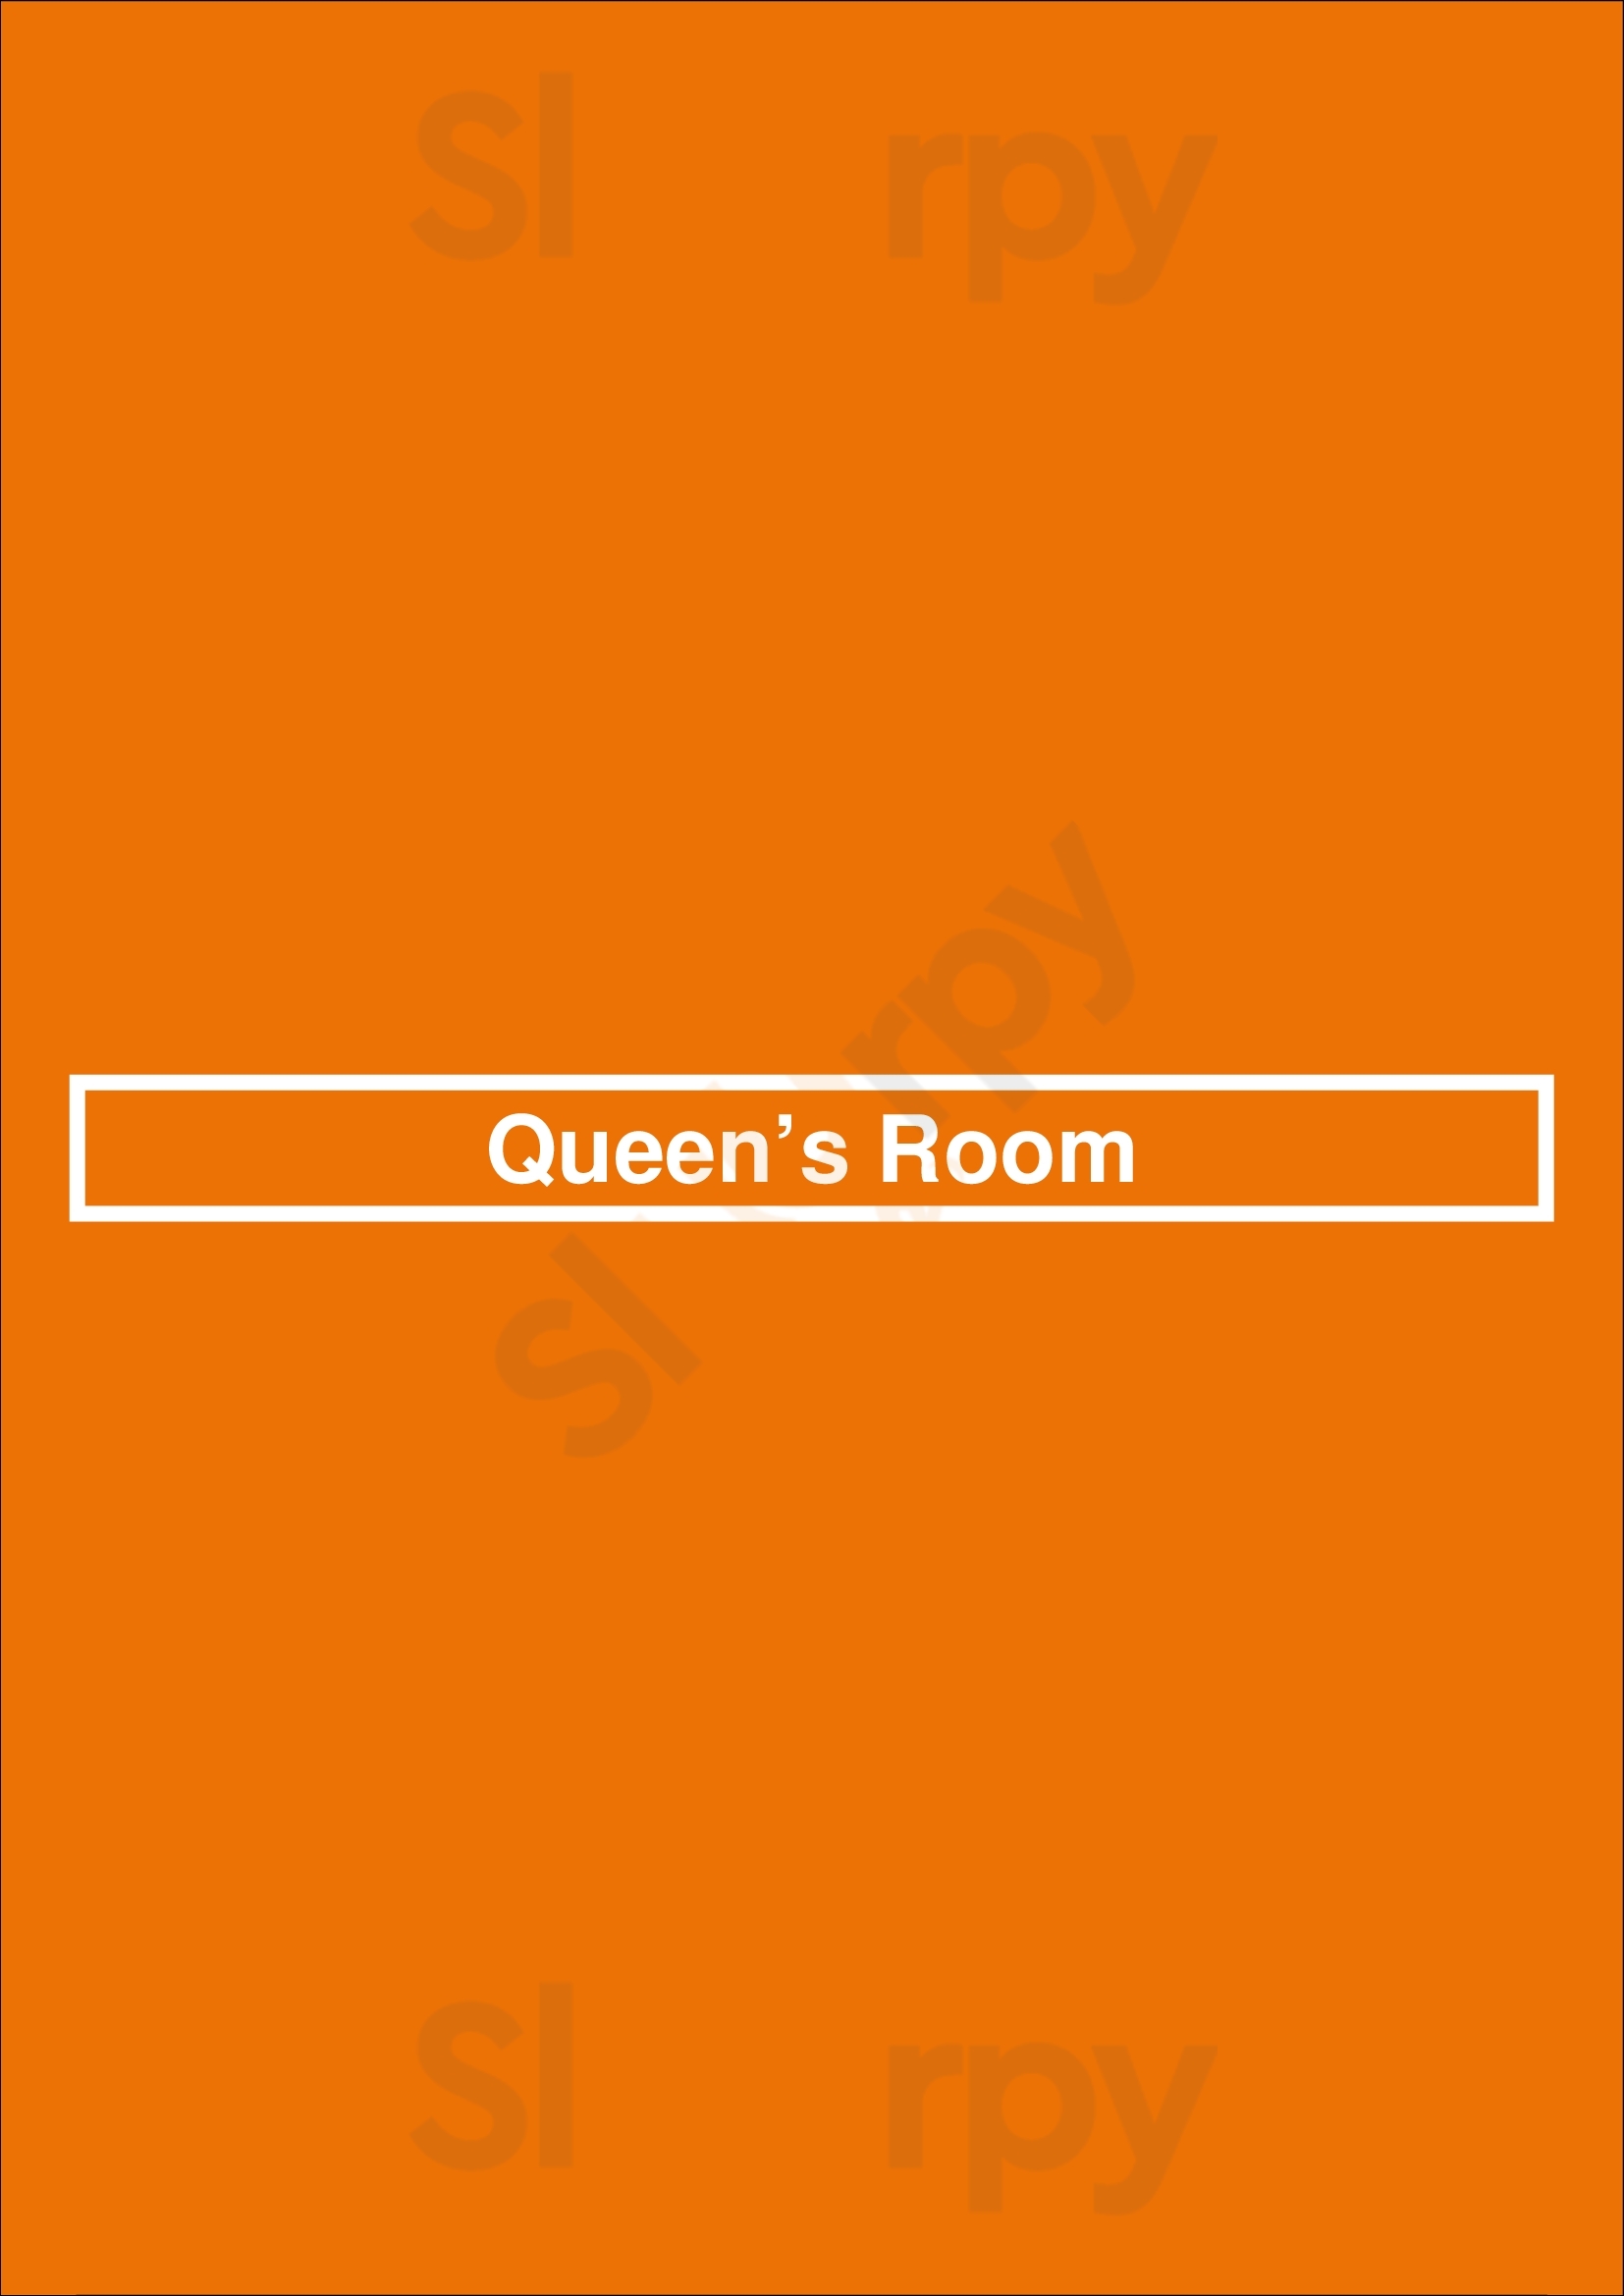 Queen’s Room Astoria Menu - 1